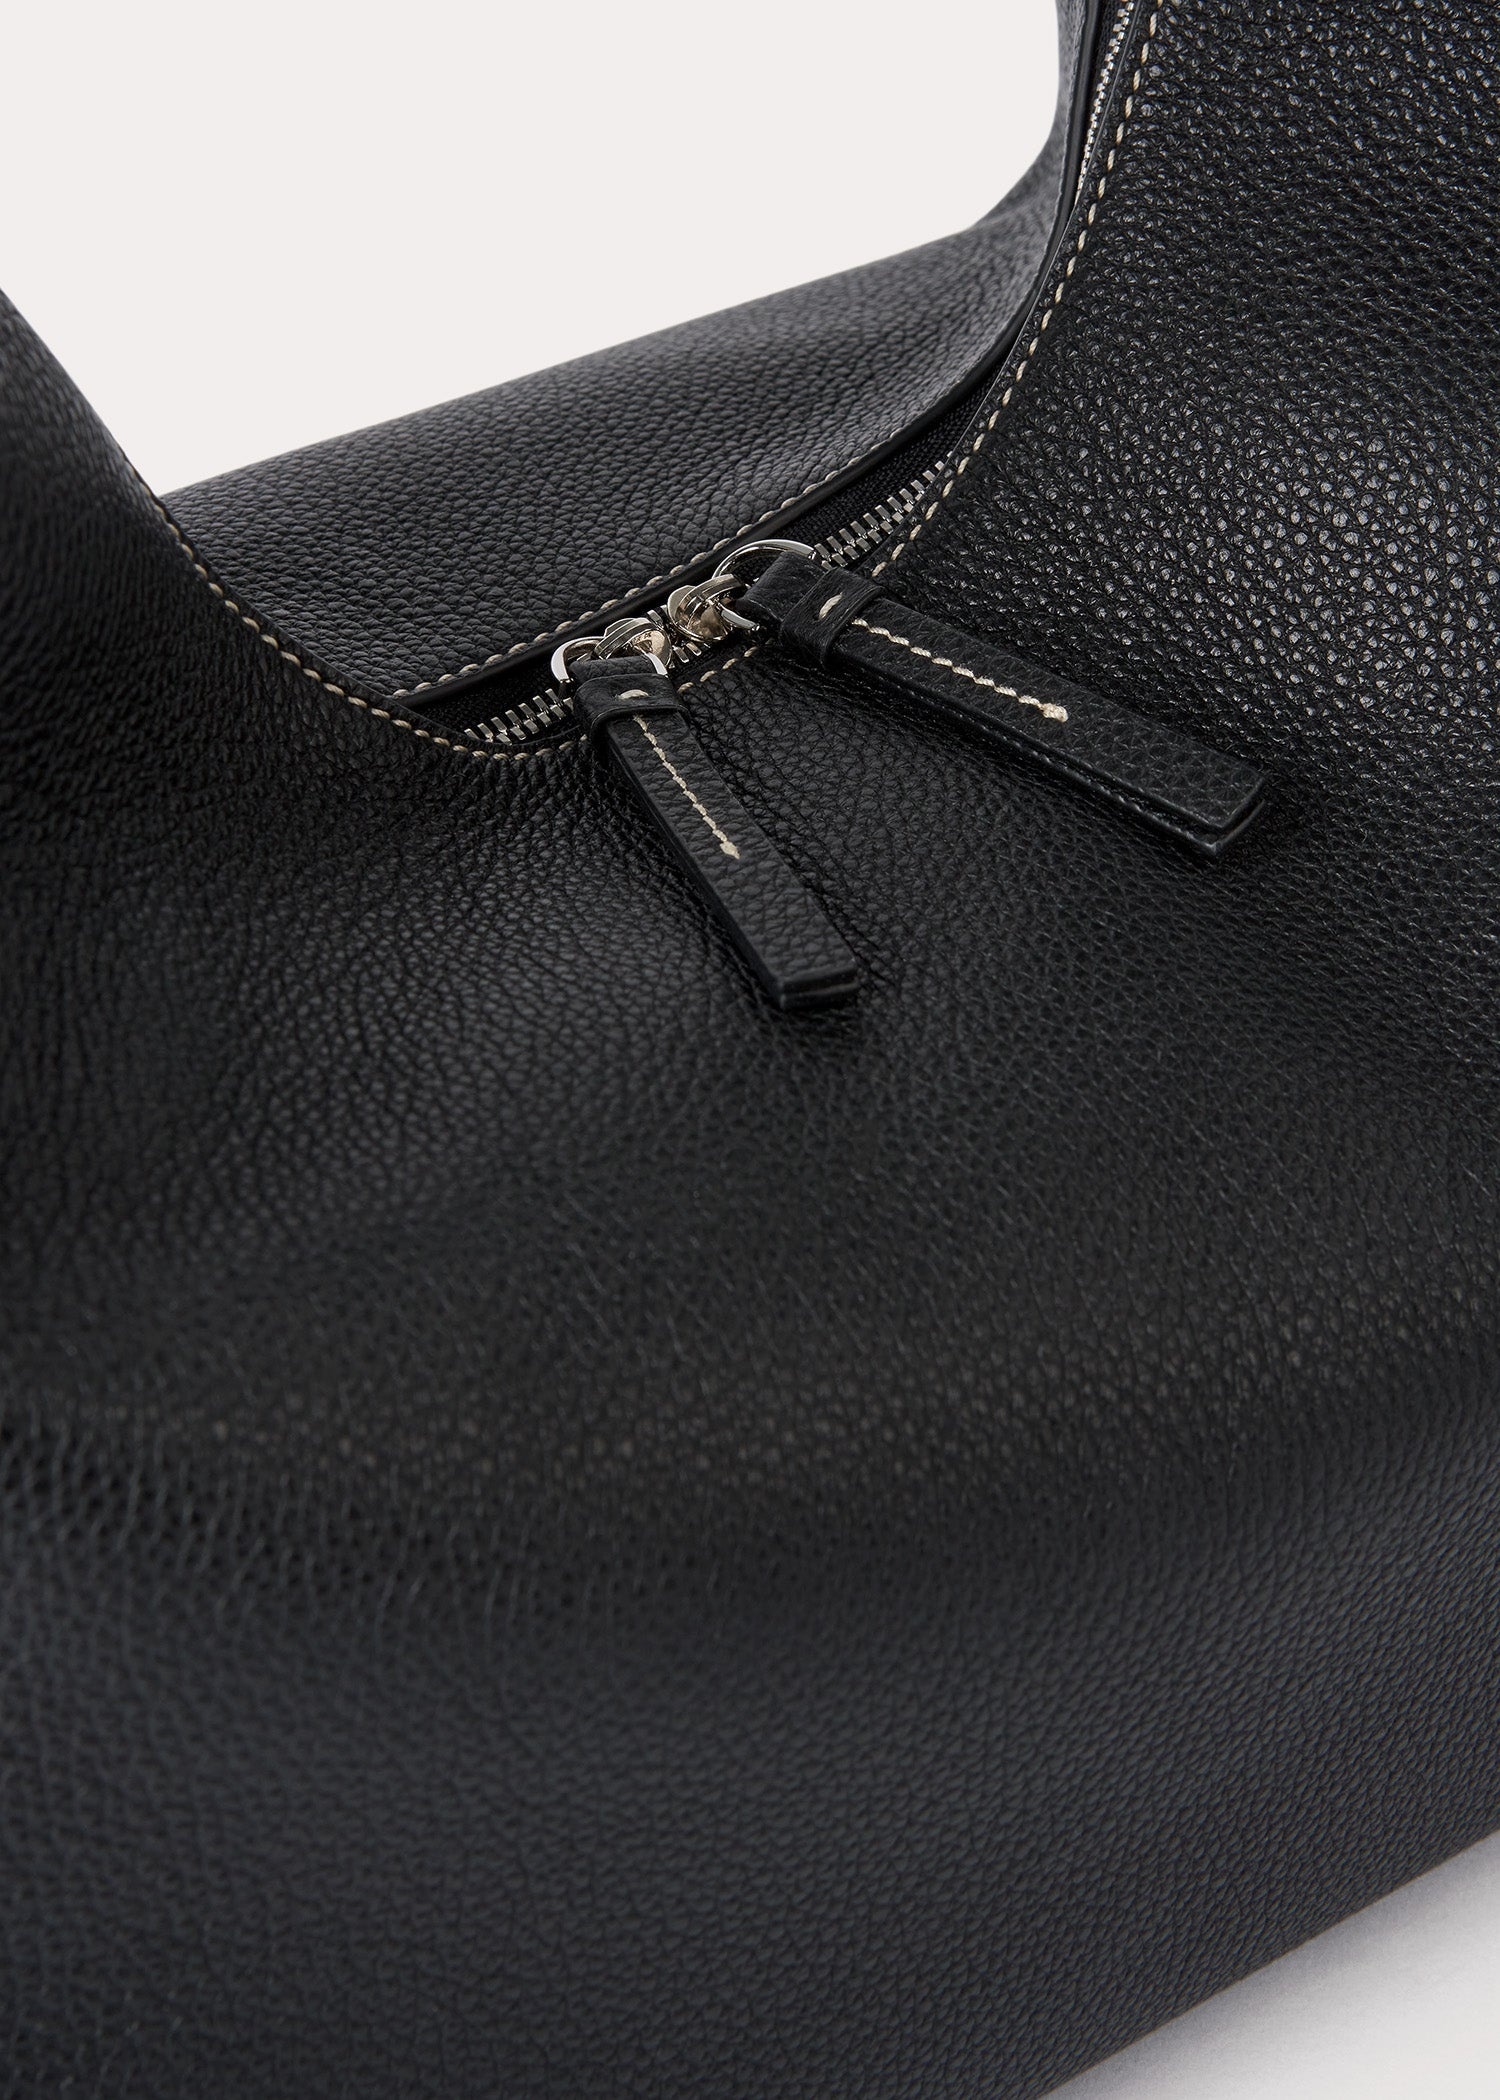 Belt hobo bag black grain - 5